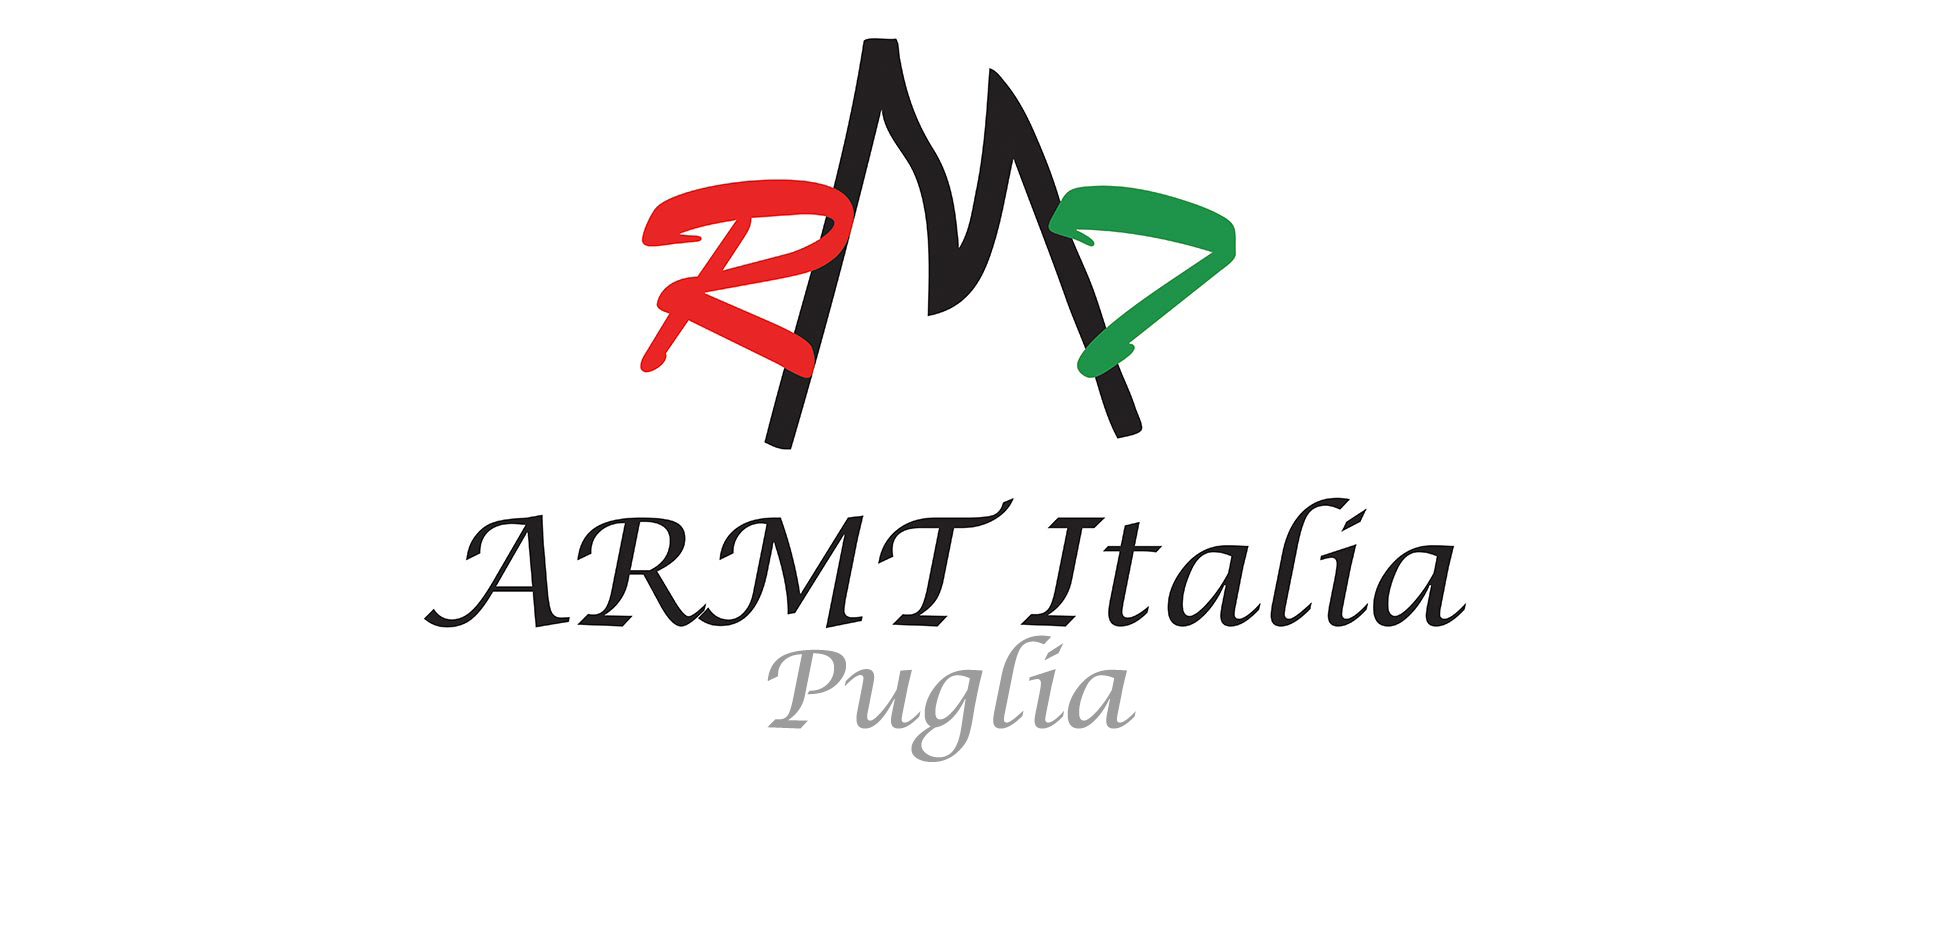 ARMT Italia (Puglia)